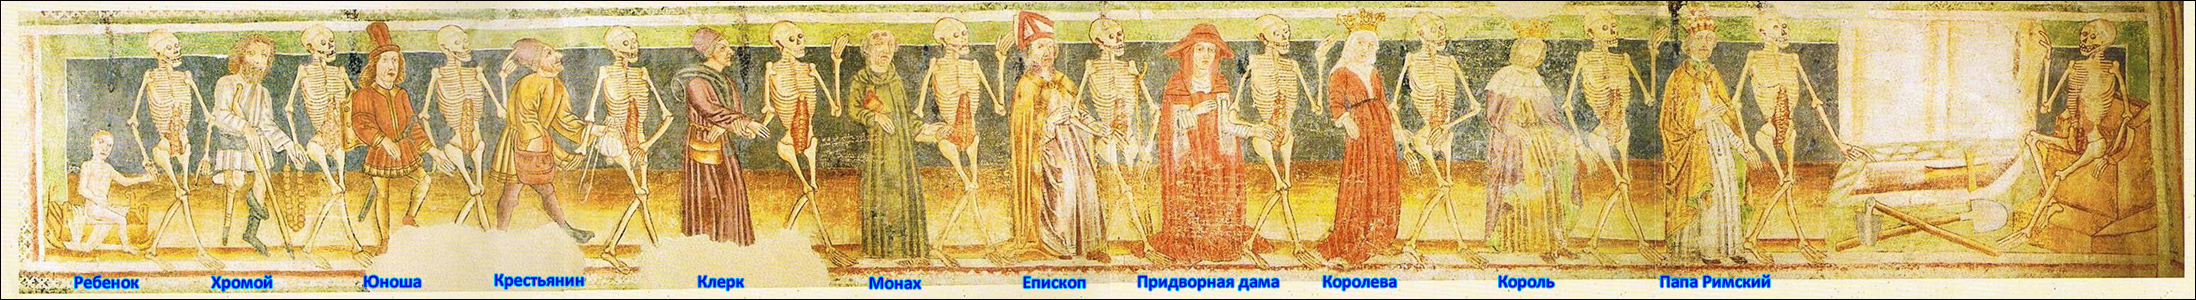 "пляски смерти" из церкви Святой Троицы, г. Храстовле, Словения, ок. 1490 г. Оригинал данной настенной иконографии сохранился в полном виде.